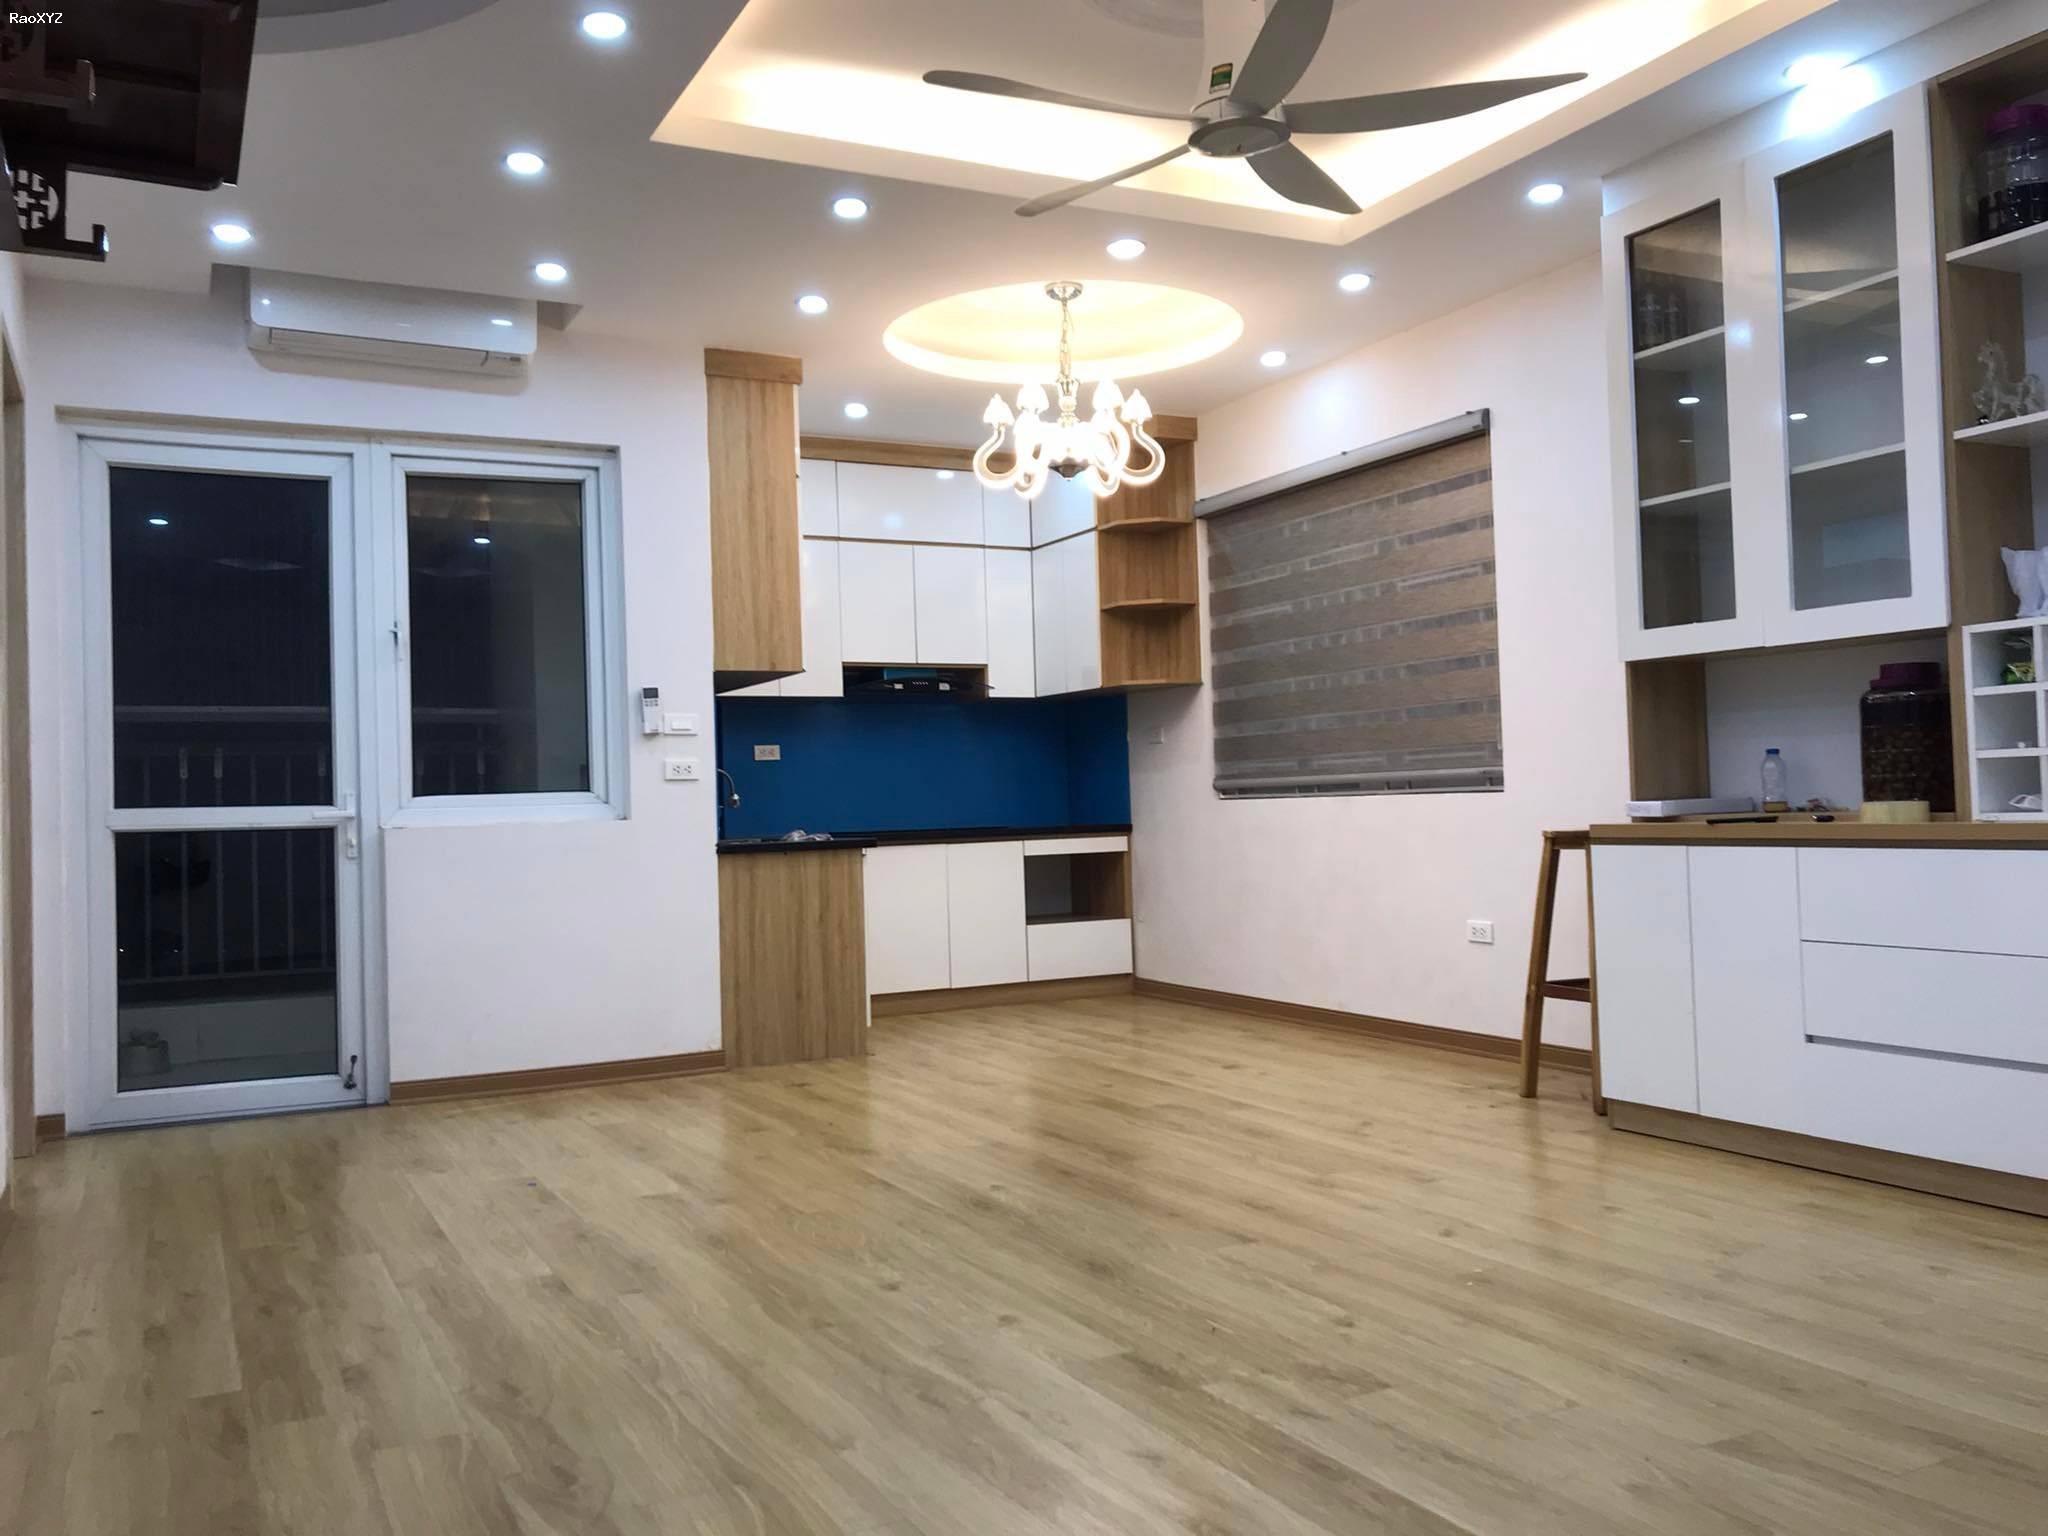 Cần bán gấp căn hộ chung cư 80m² toà HH02A kđt Thanh Hà – giá hợp lý